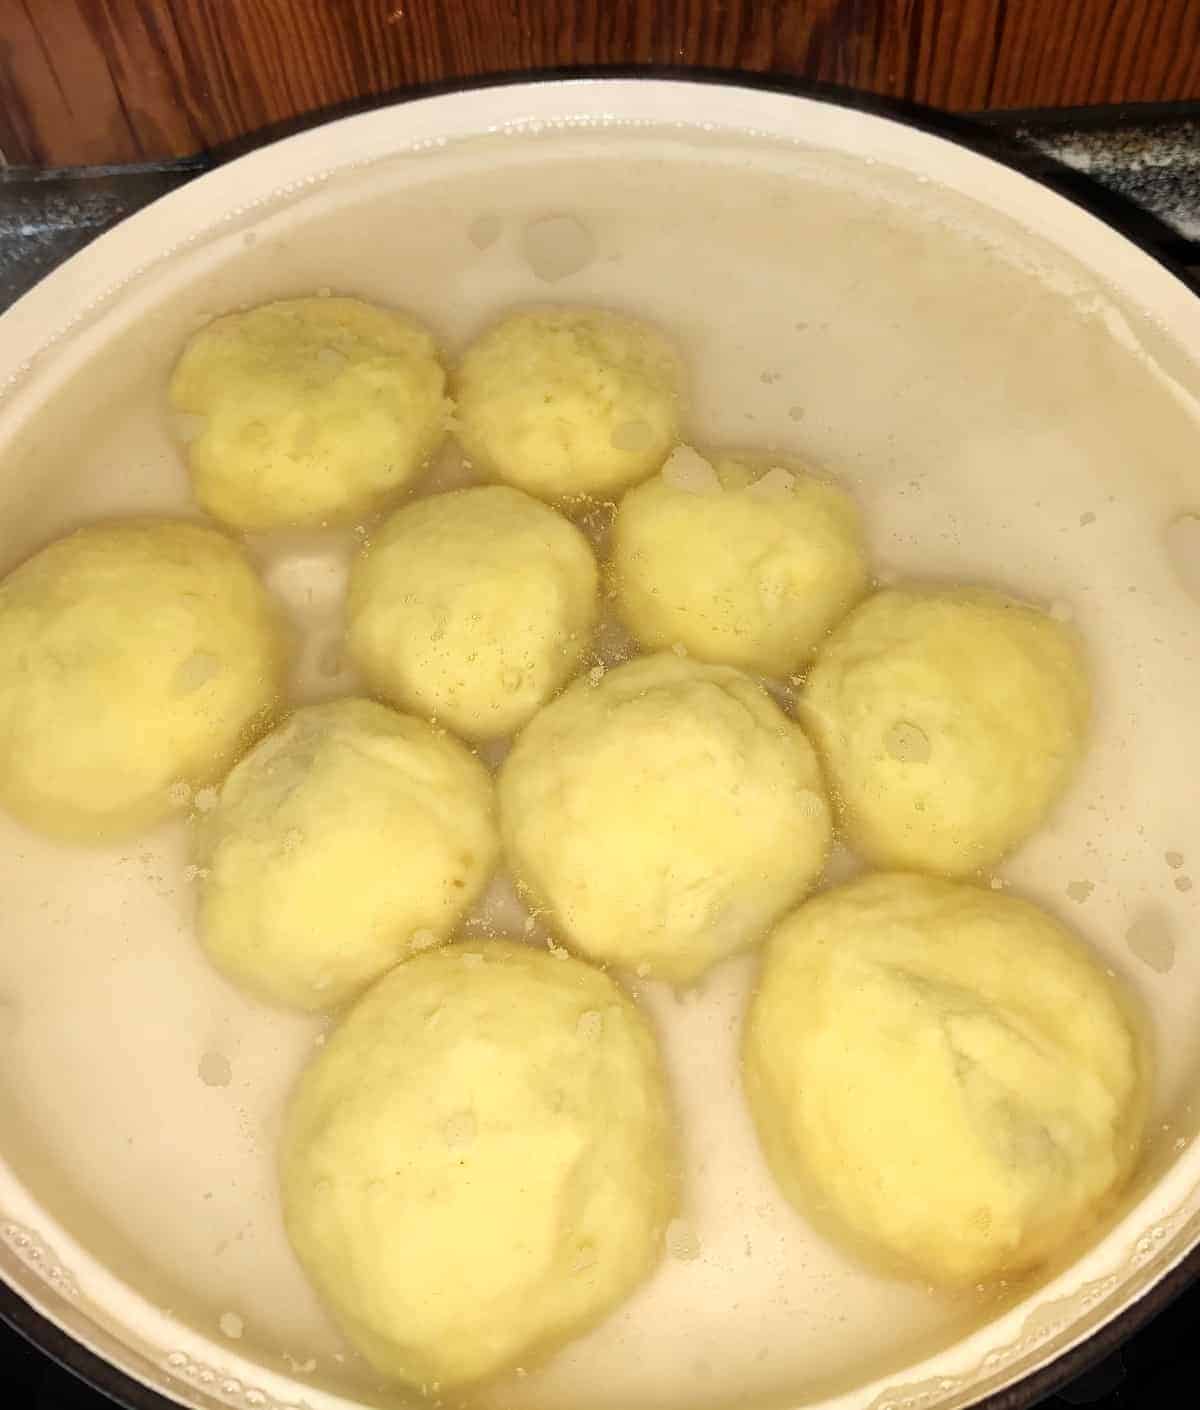 Cooking dumplings in a pan.